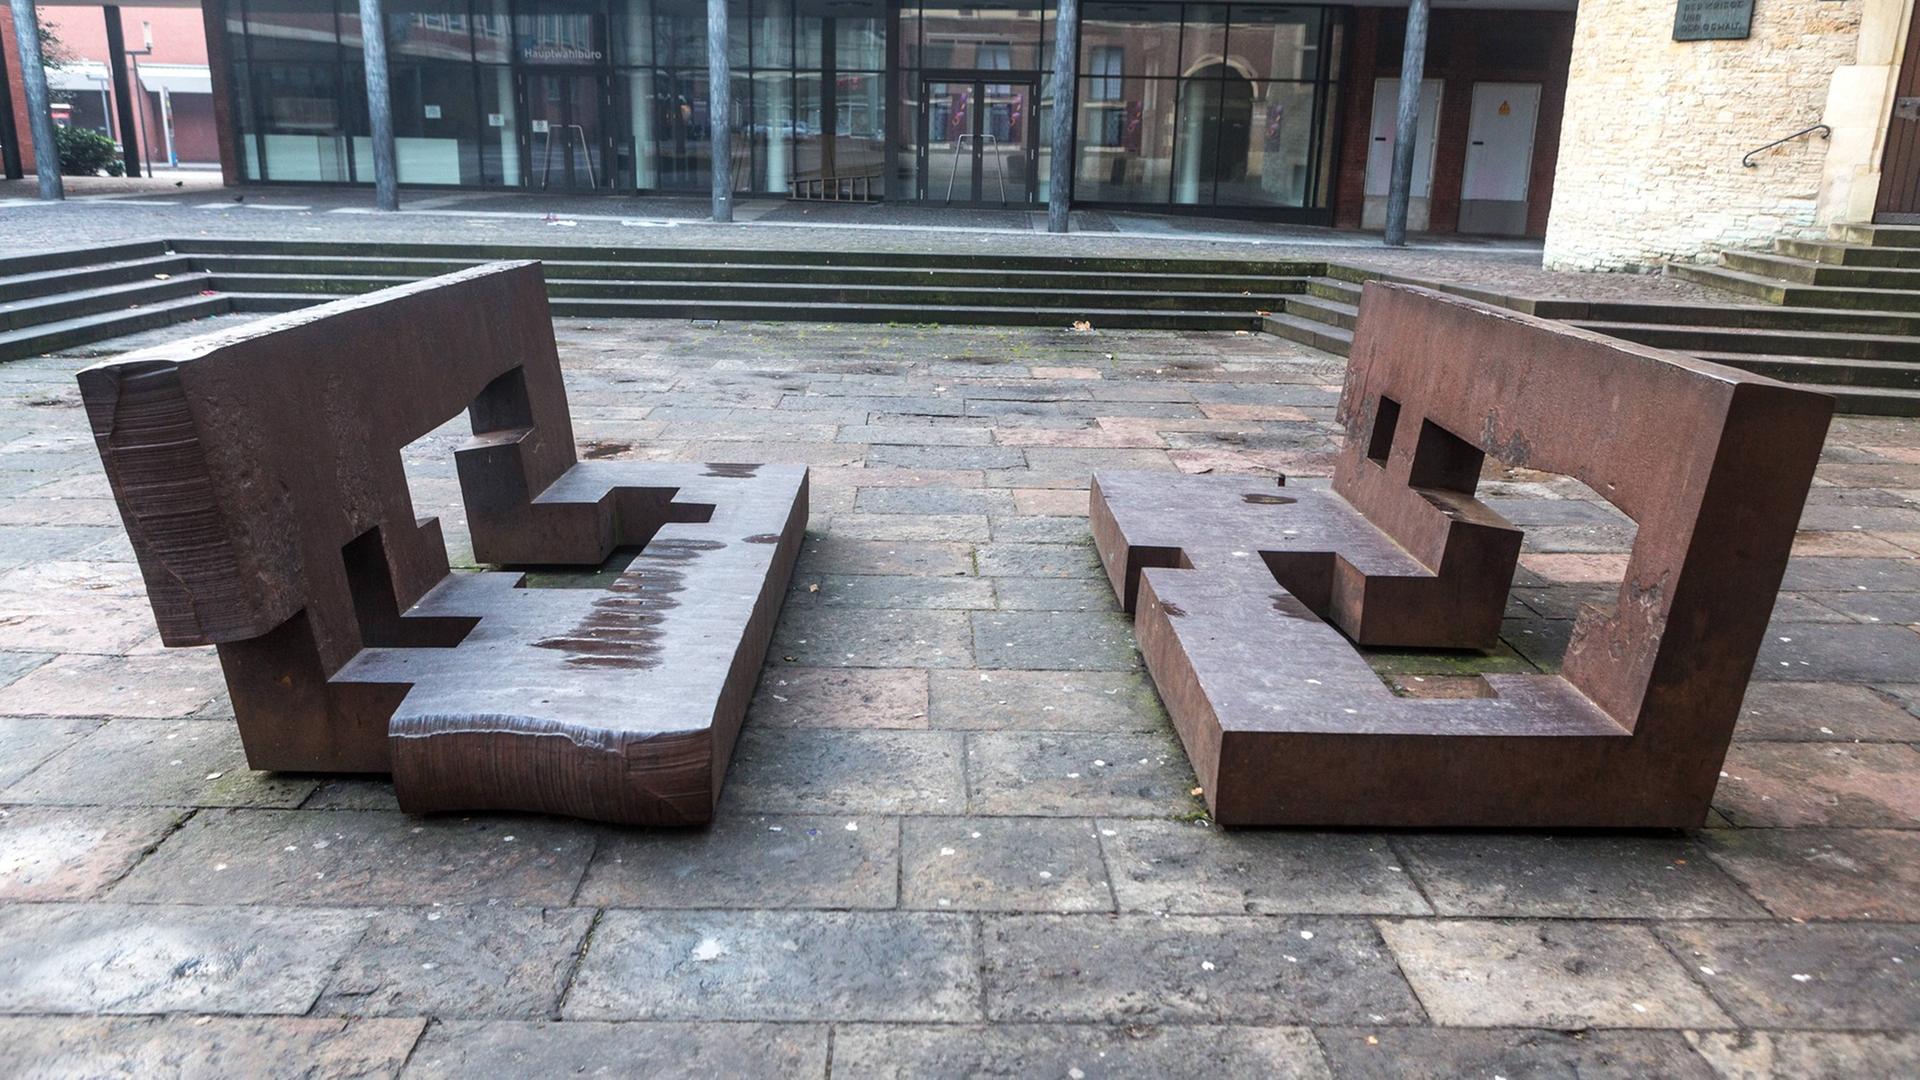 Die Skulptur "Toleranz durch Dialog" des baskischen Bildhauers Eduardo Chillida auf dem Rathausinnenhof in Münster am 1.1.2015